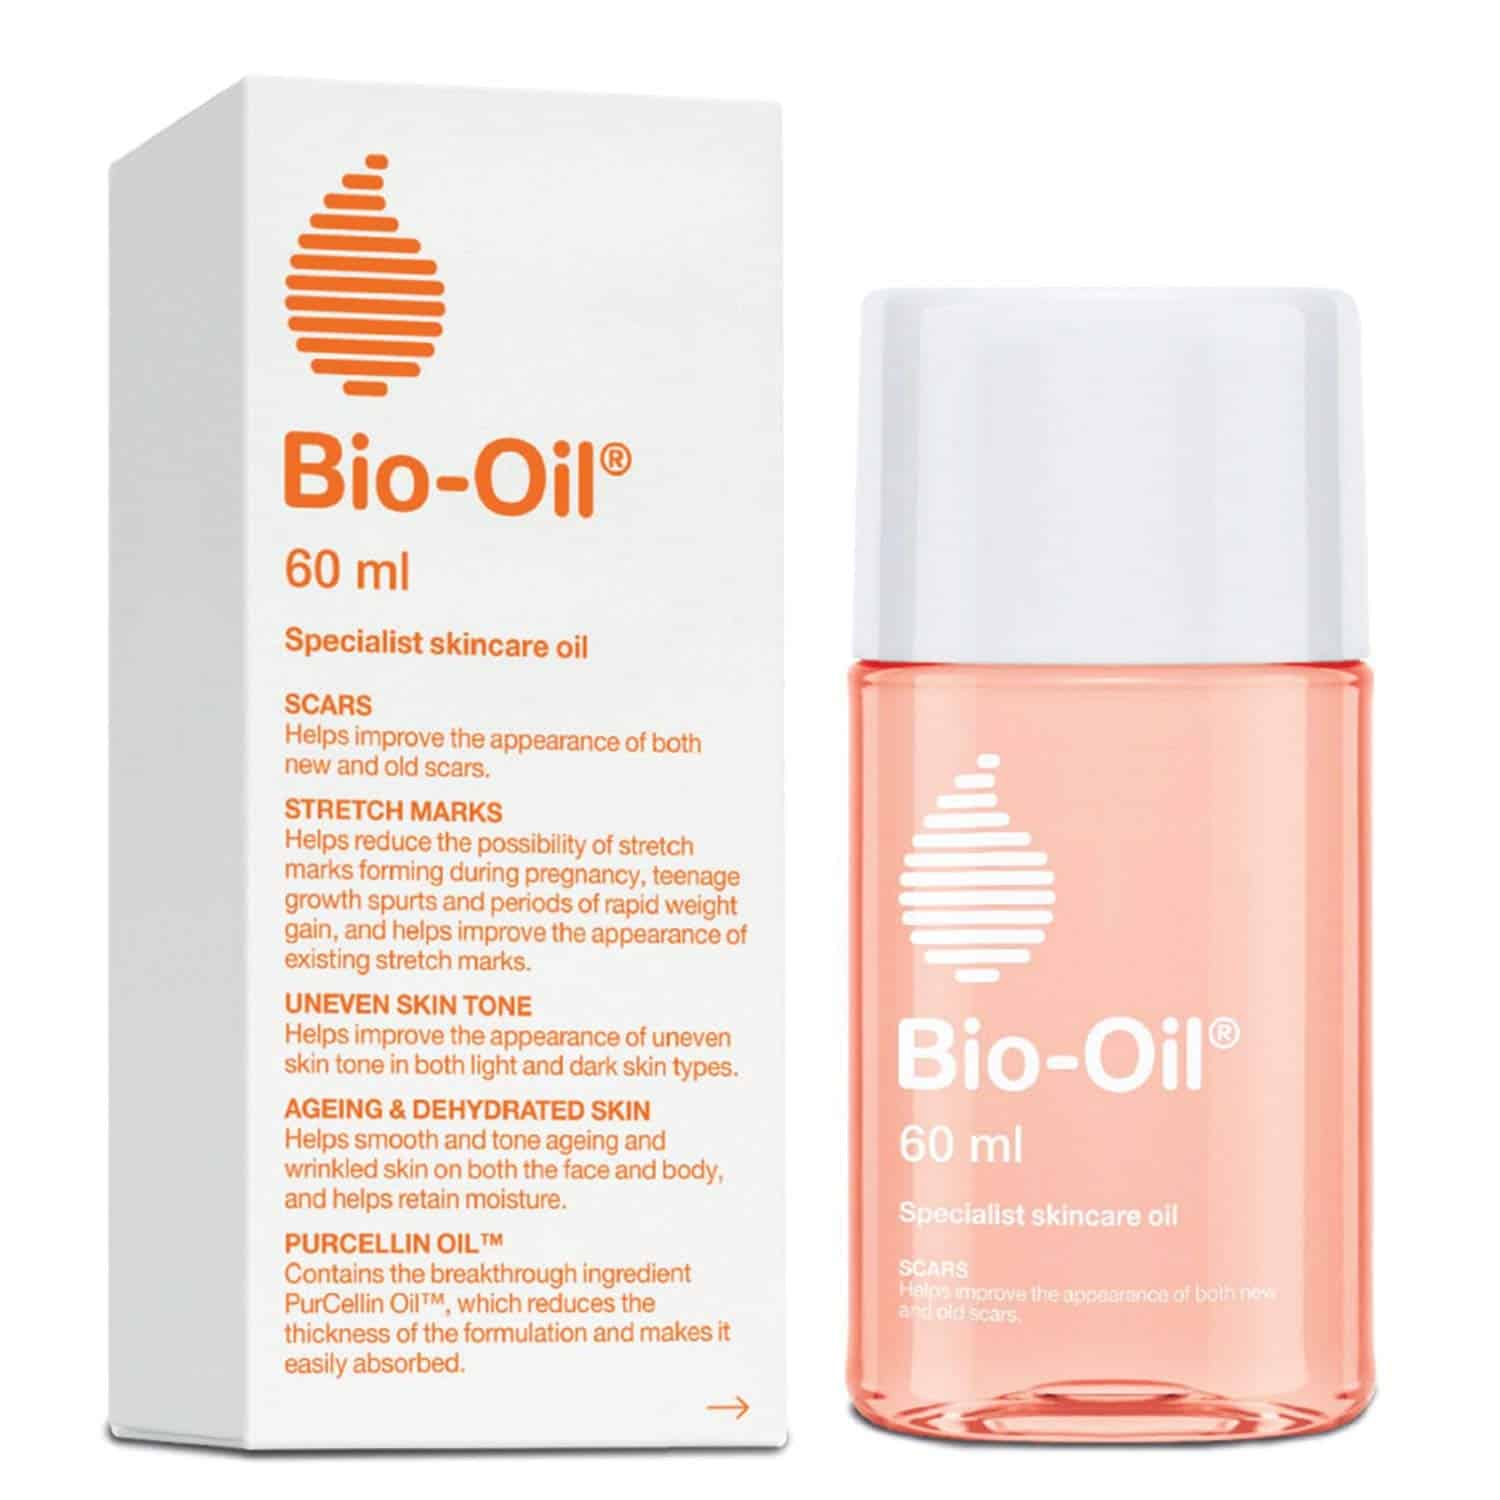 Bi-Oil Natural huile de soin cicatrice/vergeture fl 60 ml à petit prix